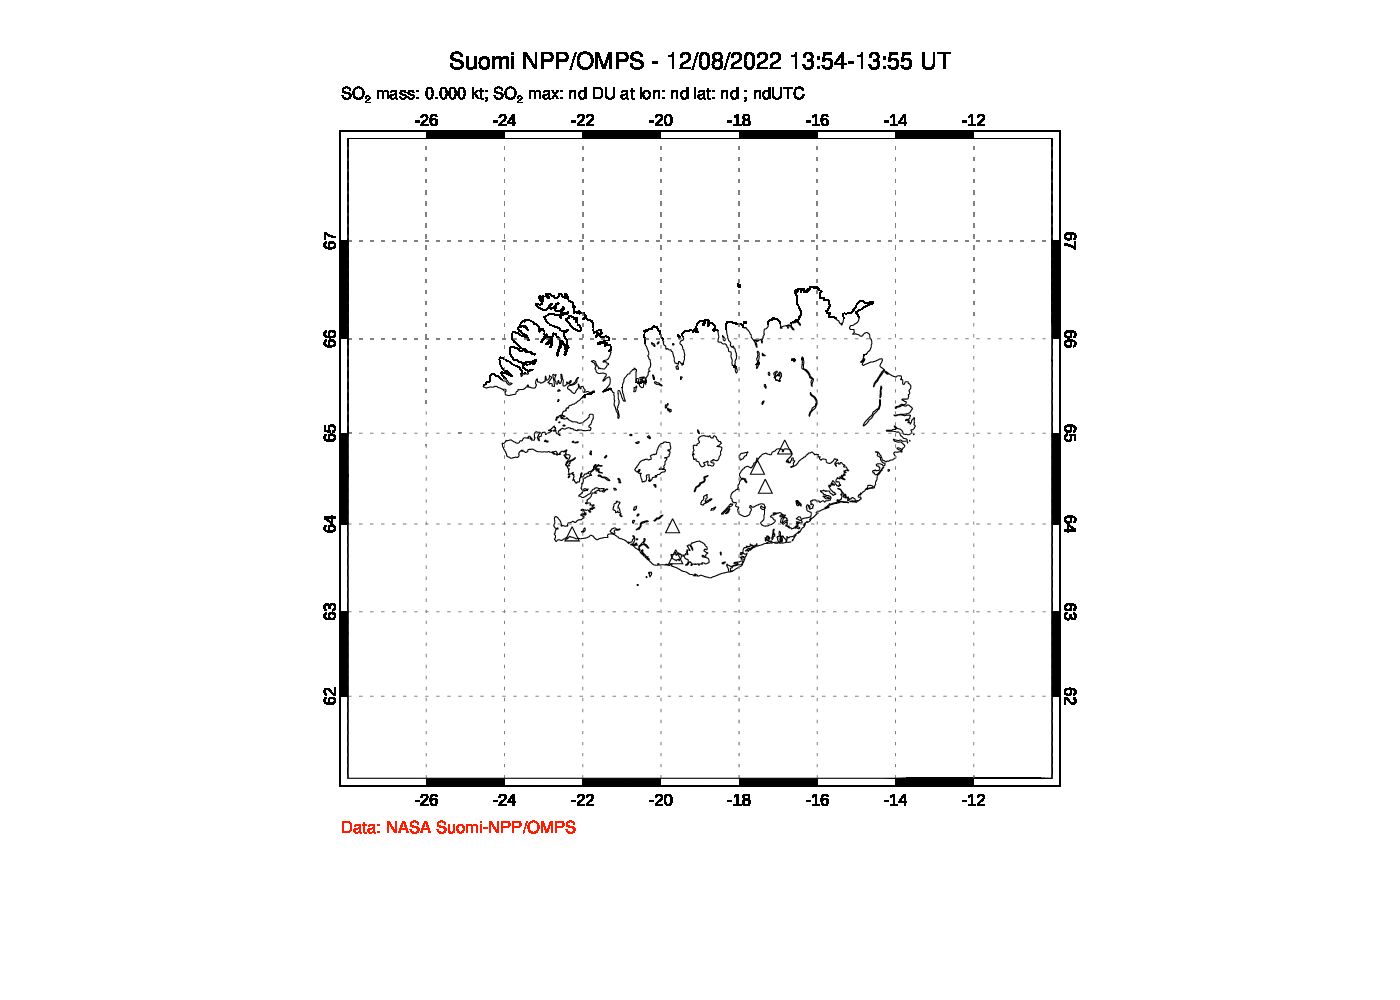 A sulfur dioxide image over Iceland on Dec 08, 2022.